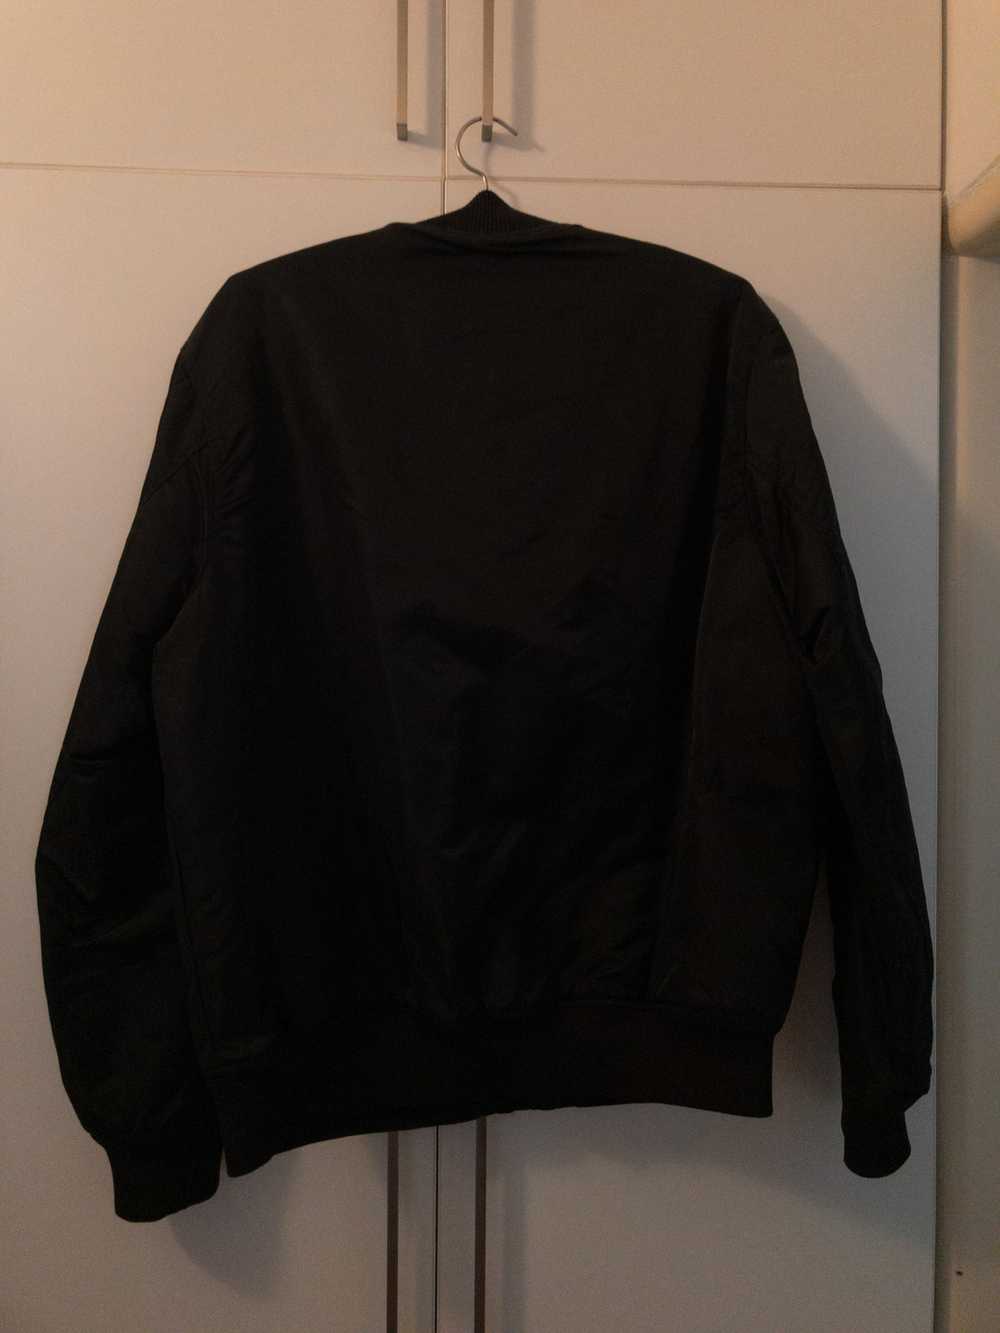 Other Black Vintage Unbranded Bomber Jacket - image 4